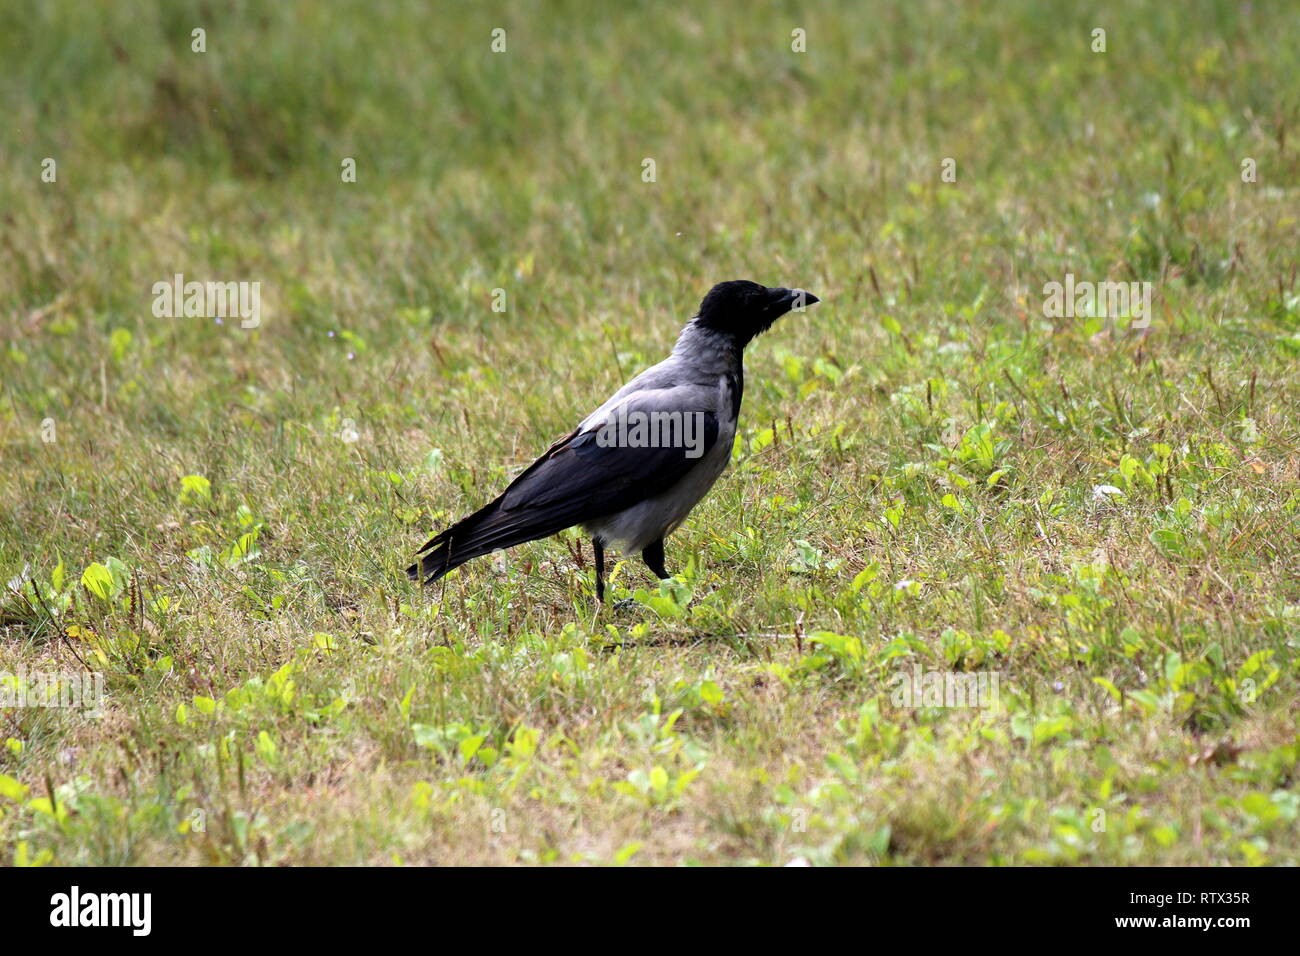 Nebelkrähe oder Corvus cornix oder Hoodie Grau und Schwarz kleiner Vogel  auf ungeschnittenes Gras in lokalen Park auf warmen sonnigen Tag  Stockfotografie - Alamy